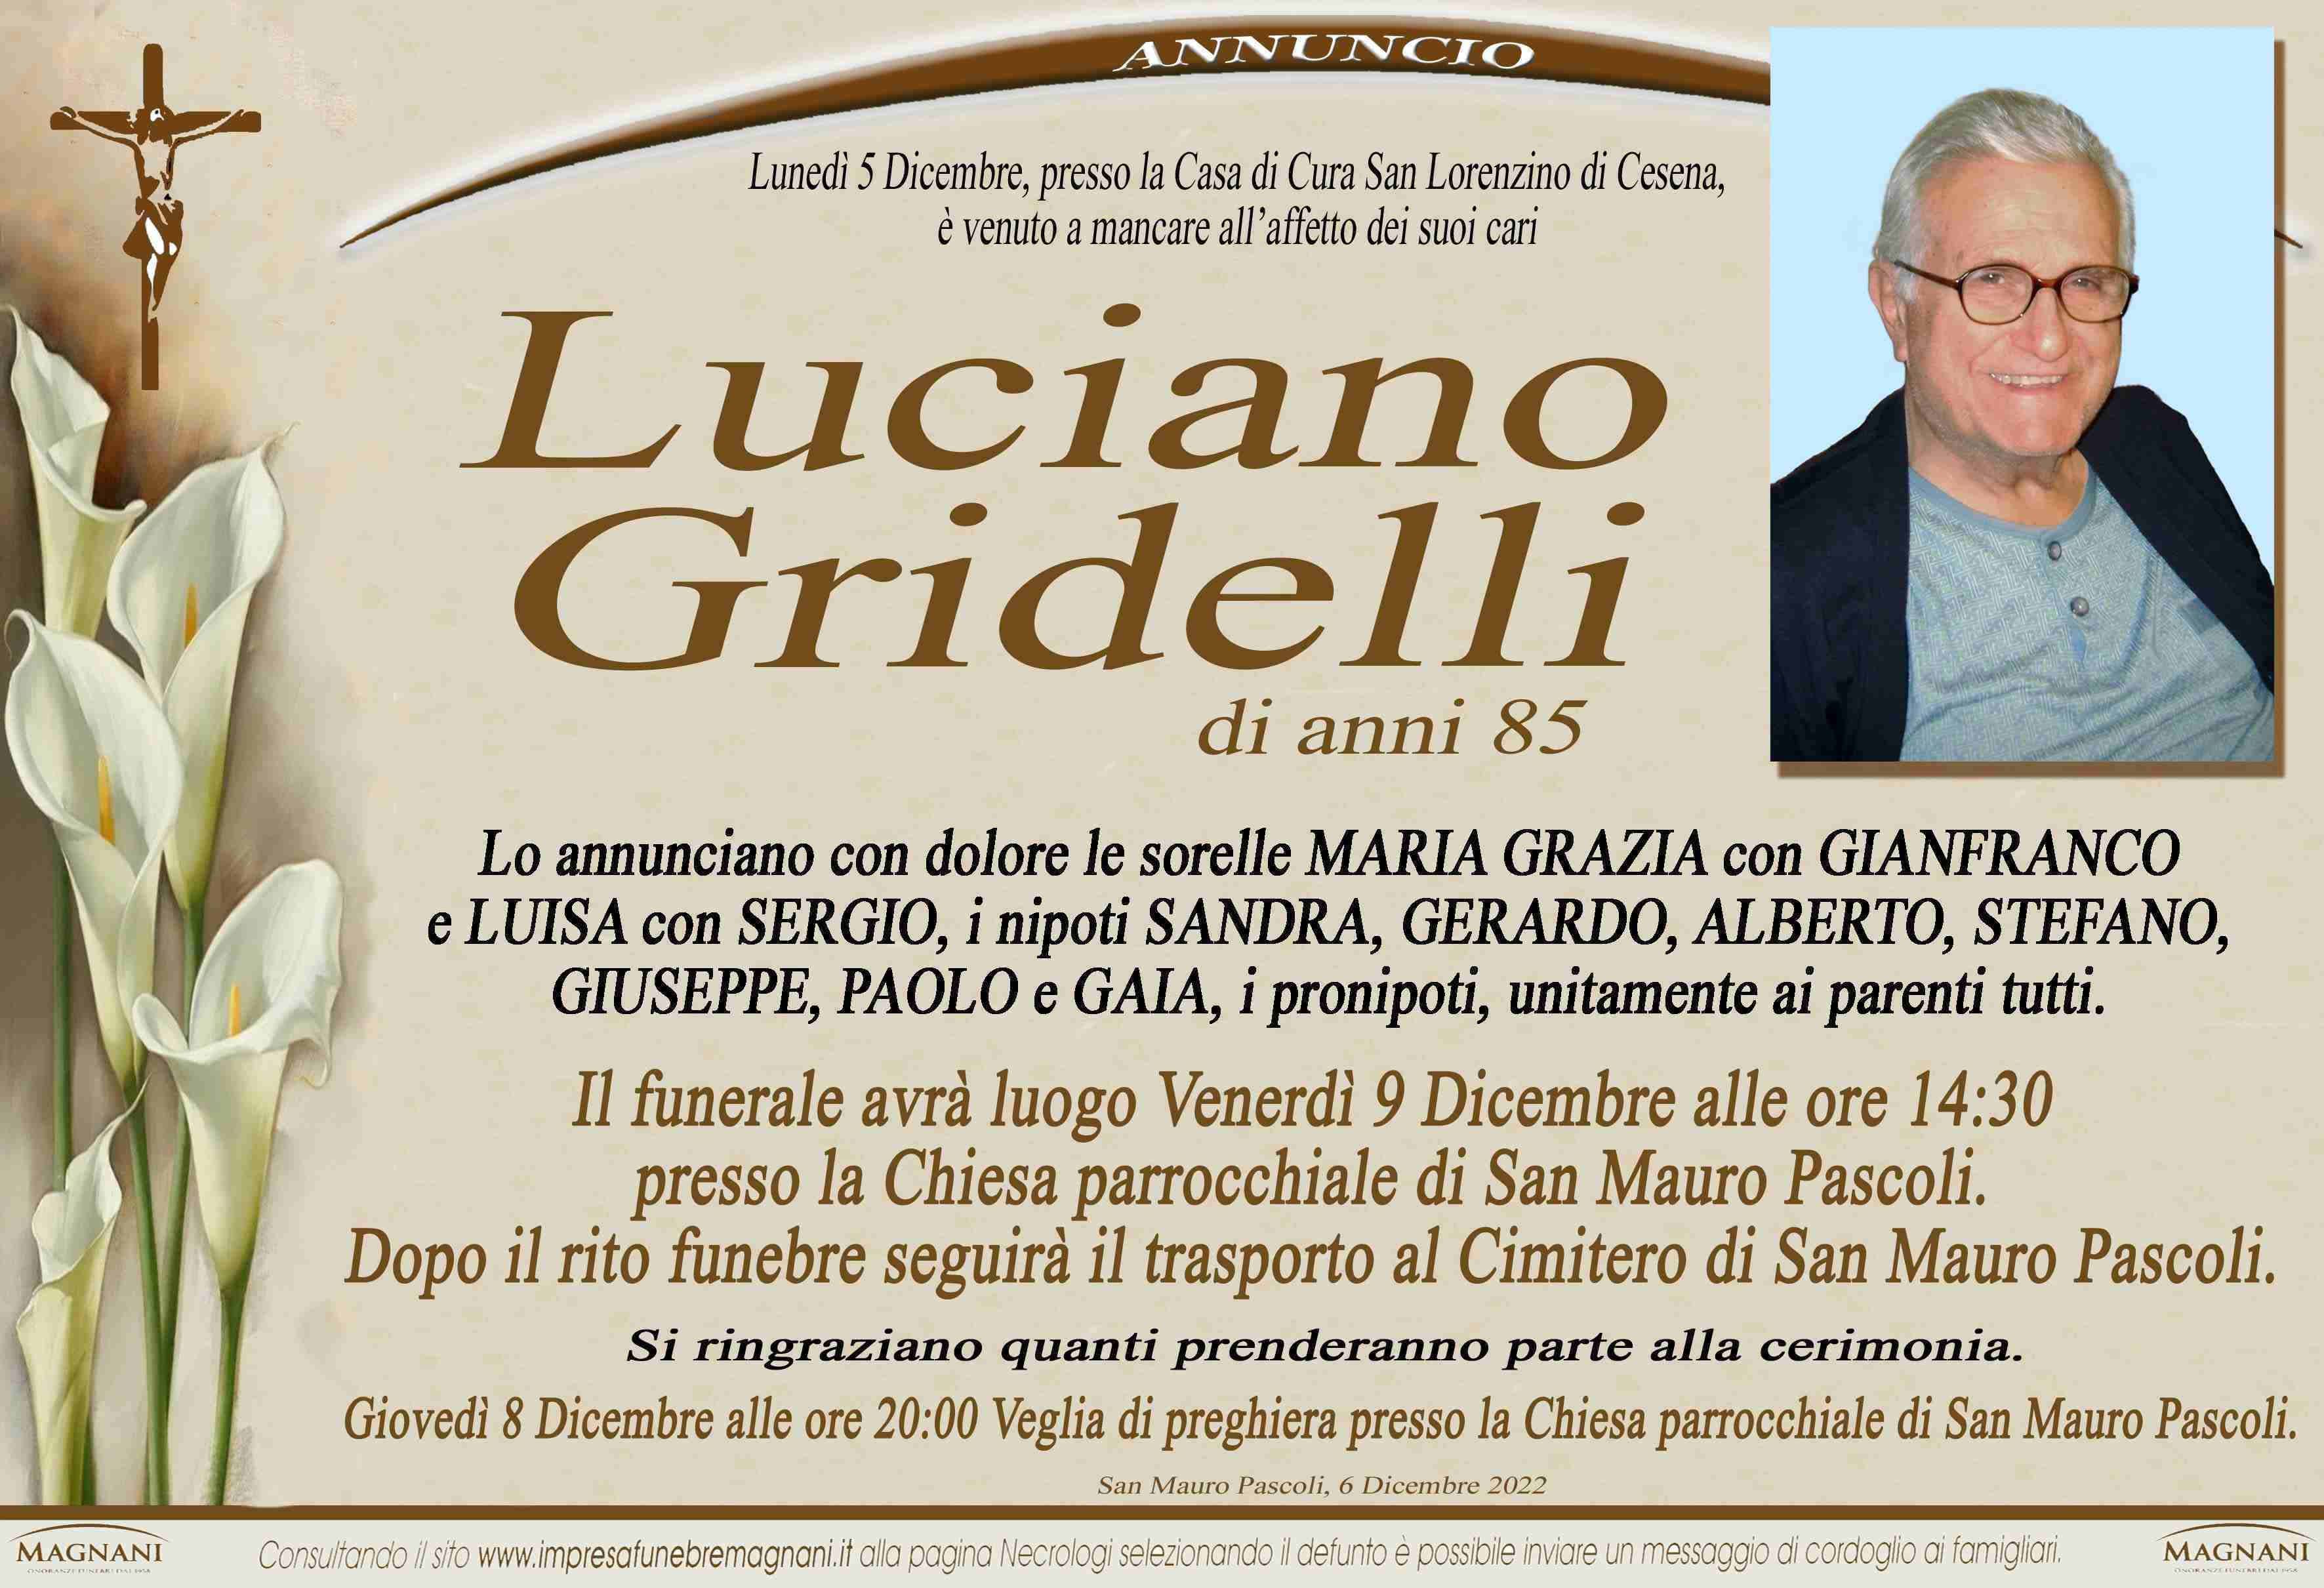 Luciano Gridelli